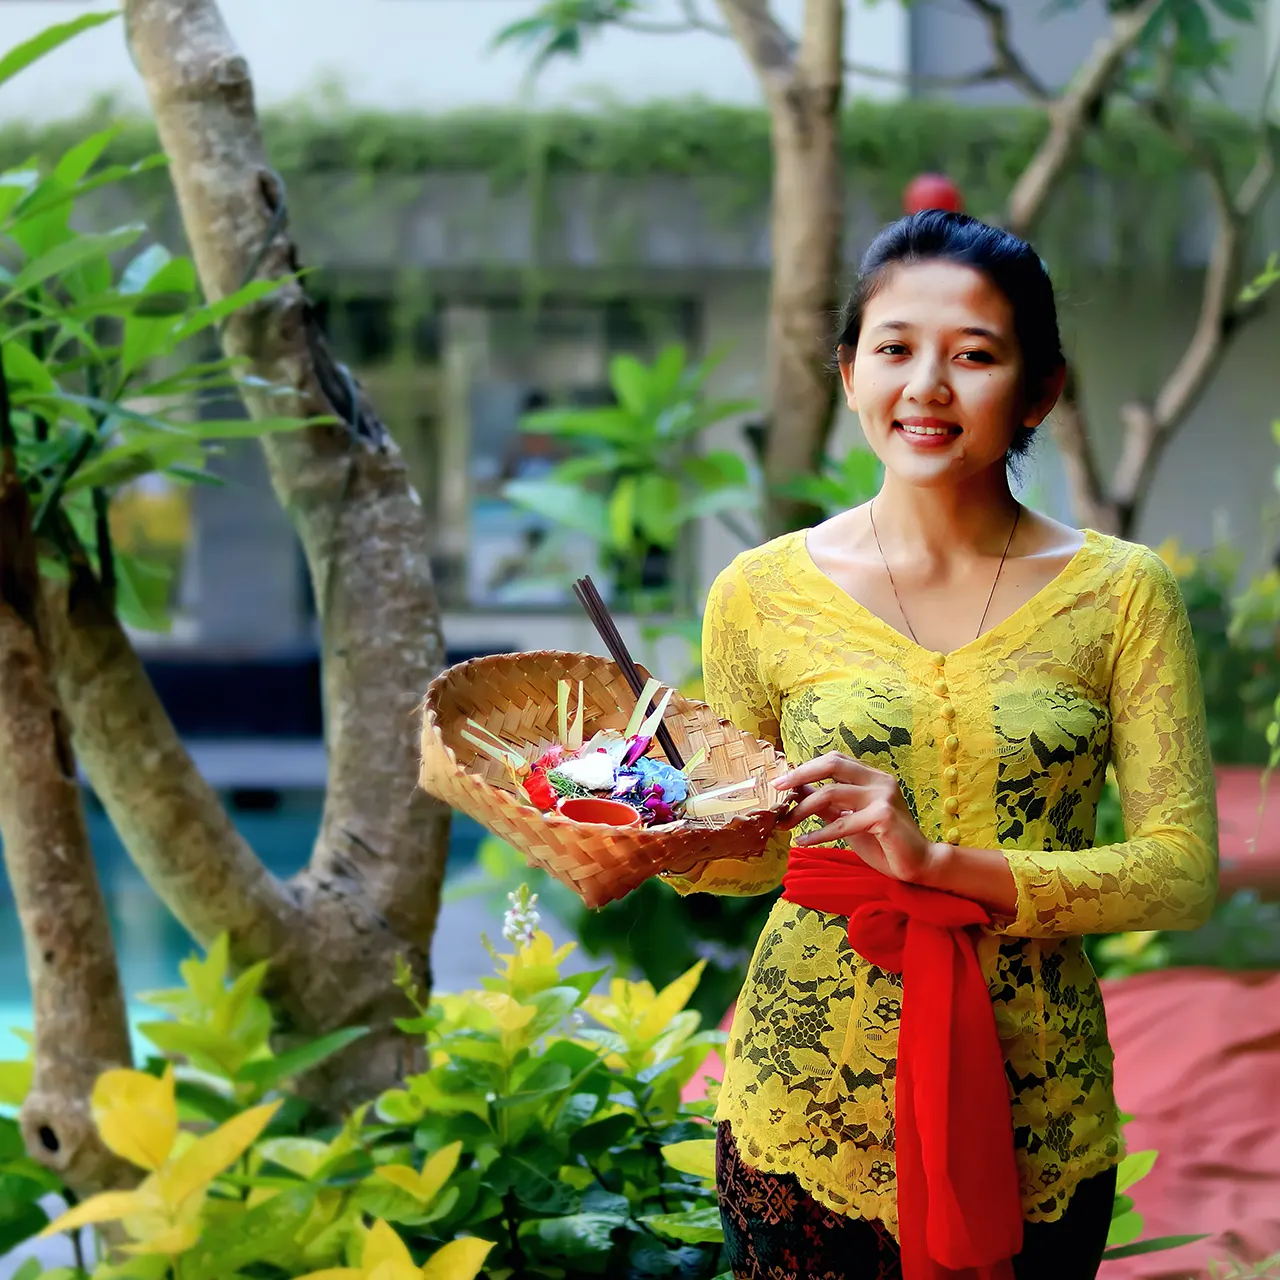 Balinese woman wearing yellow dress. Photo by Farano Gunawan on Unsplash